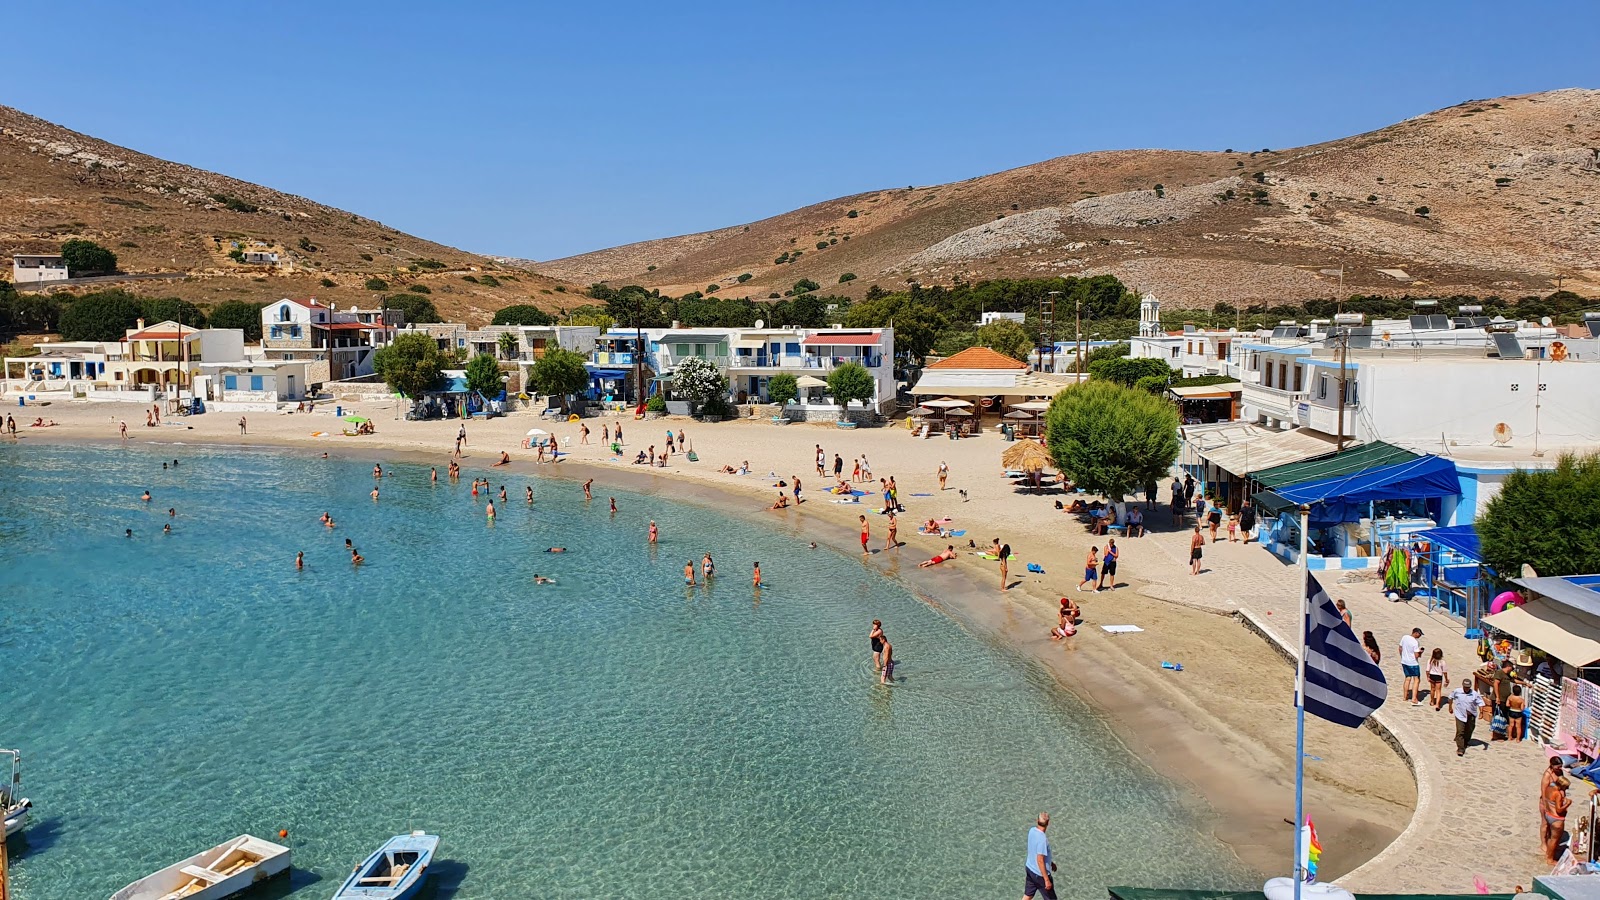 Pserimos Plajı'in fotoğrafı parlak ince kum yüzey ile